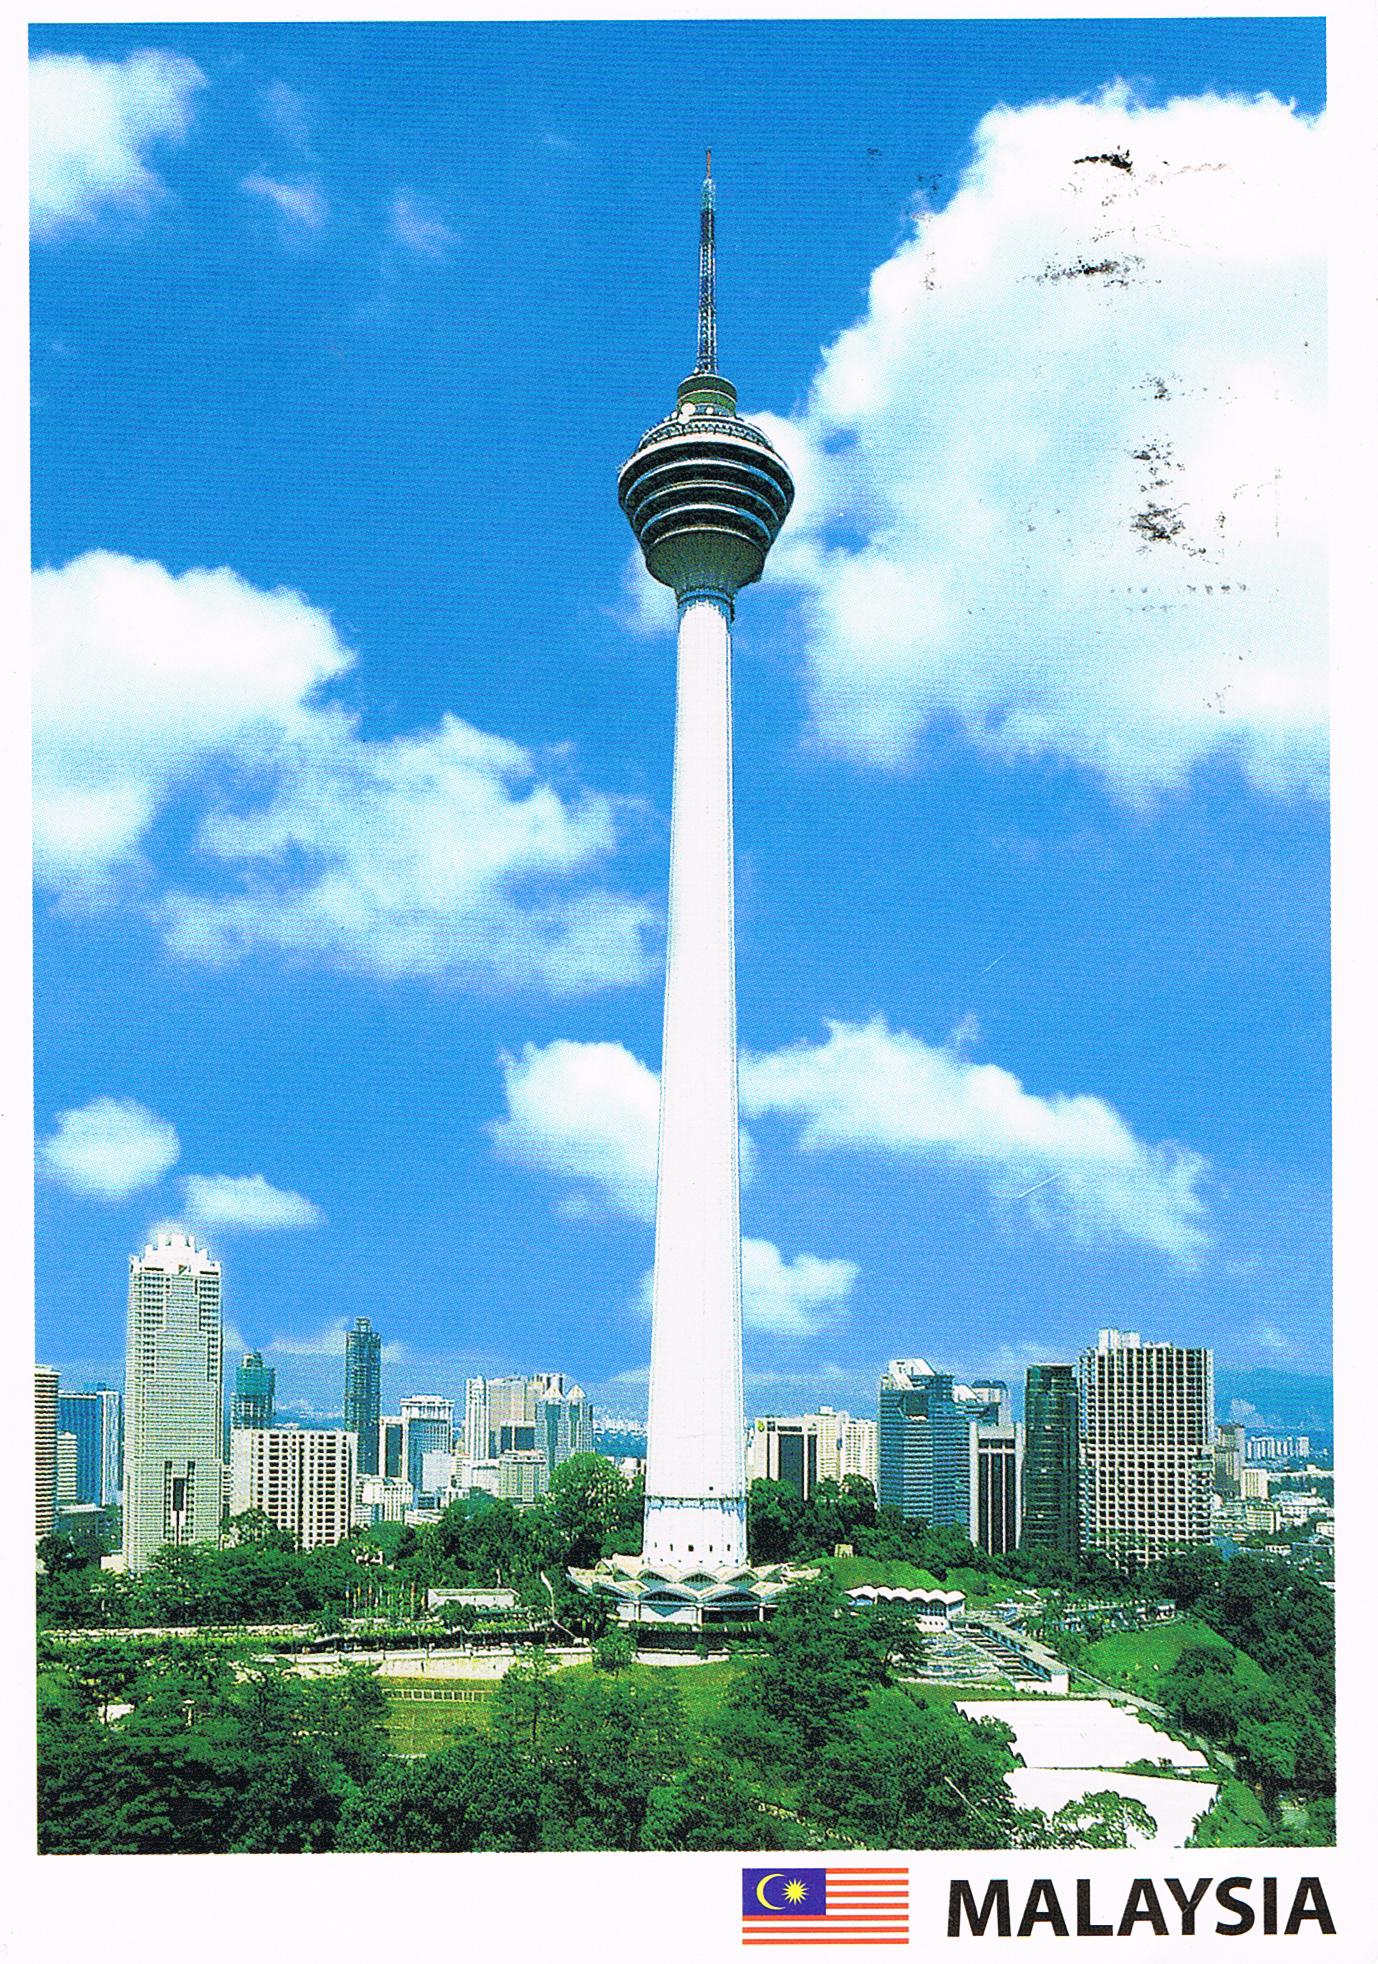 Menara Kuala Lumpur in Kuala Lumpur, Malaysia